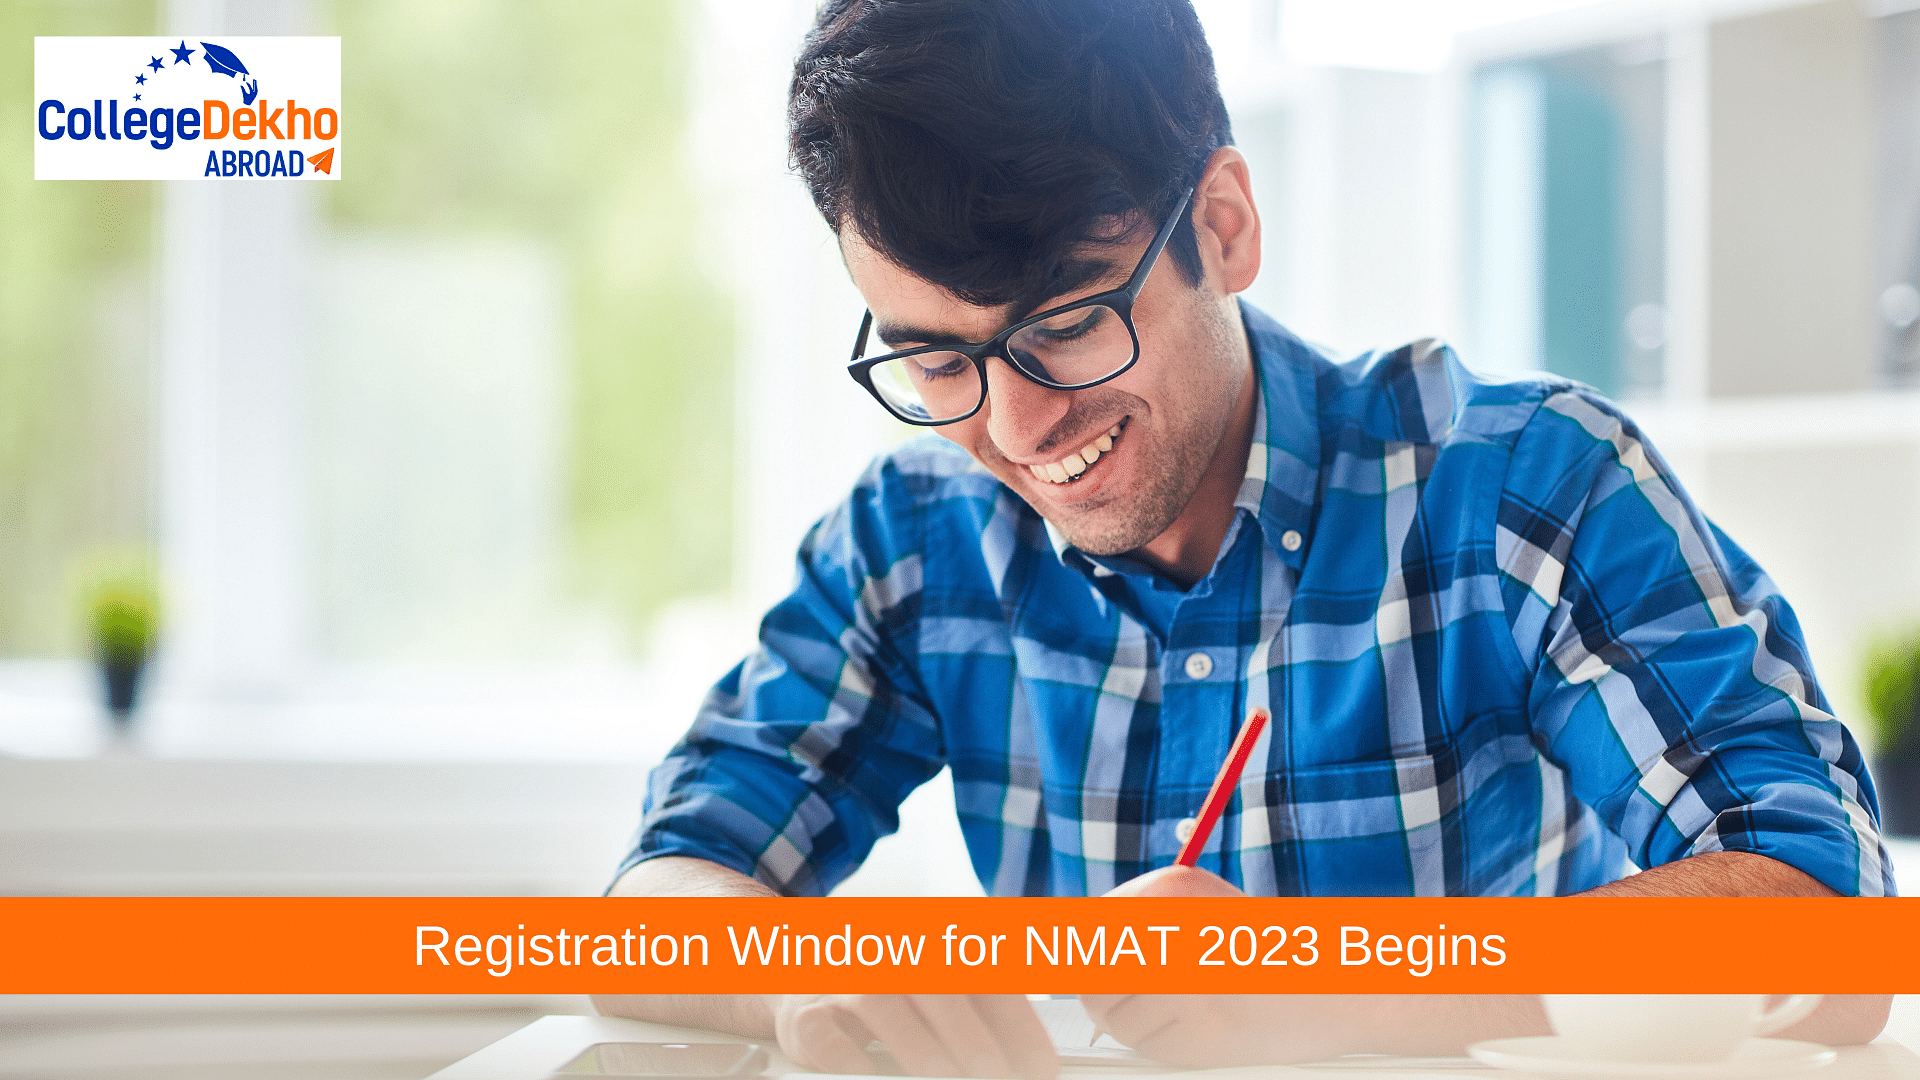 Registration Window for NMAT 2023 Begins